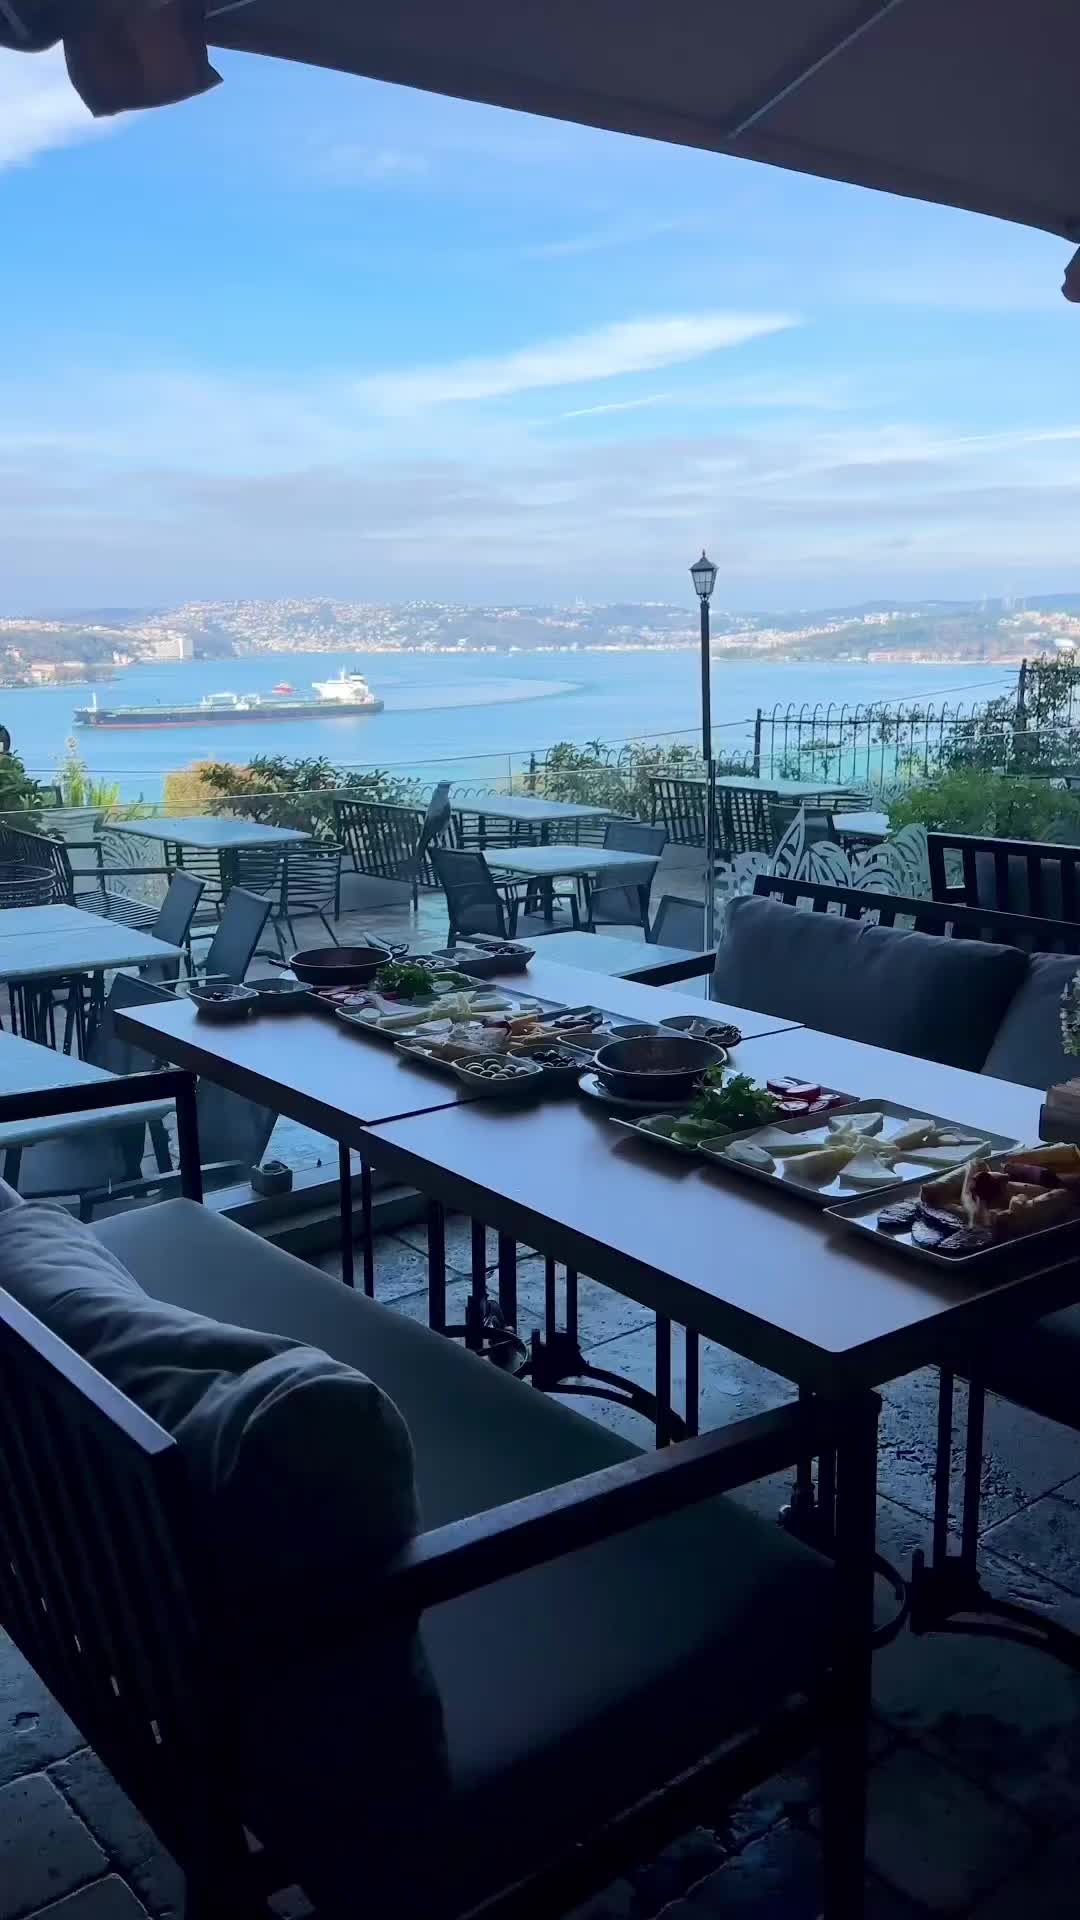 Morning Views at Paşabahçe Marina, Istanbul